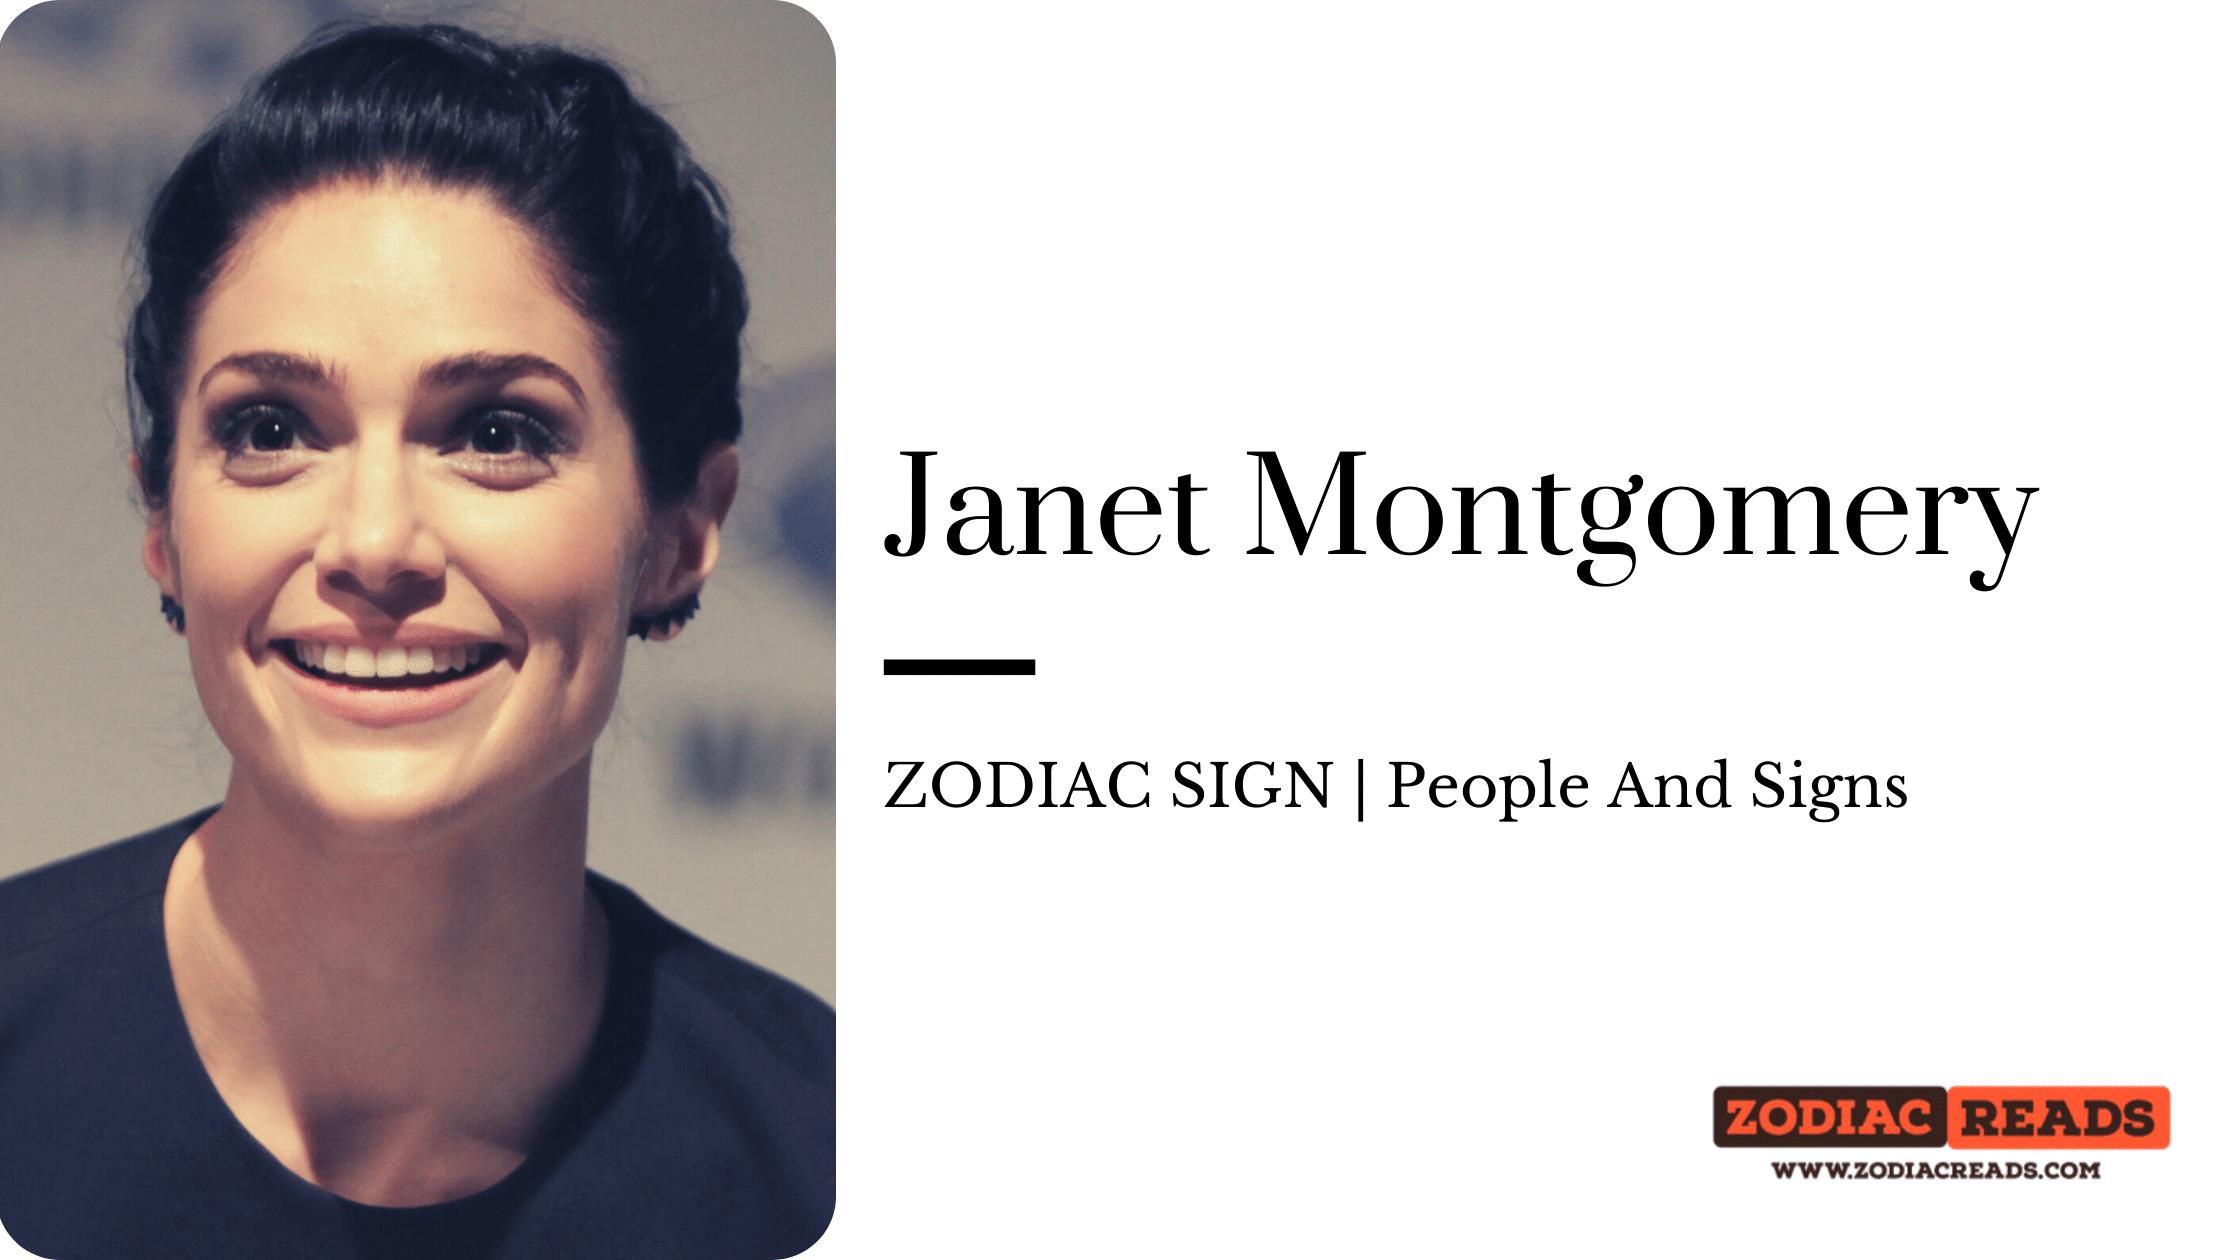 Janet Montgomery zodiac